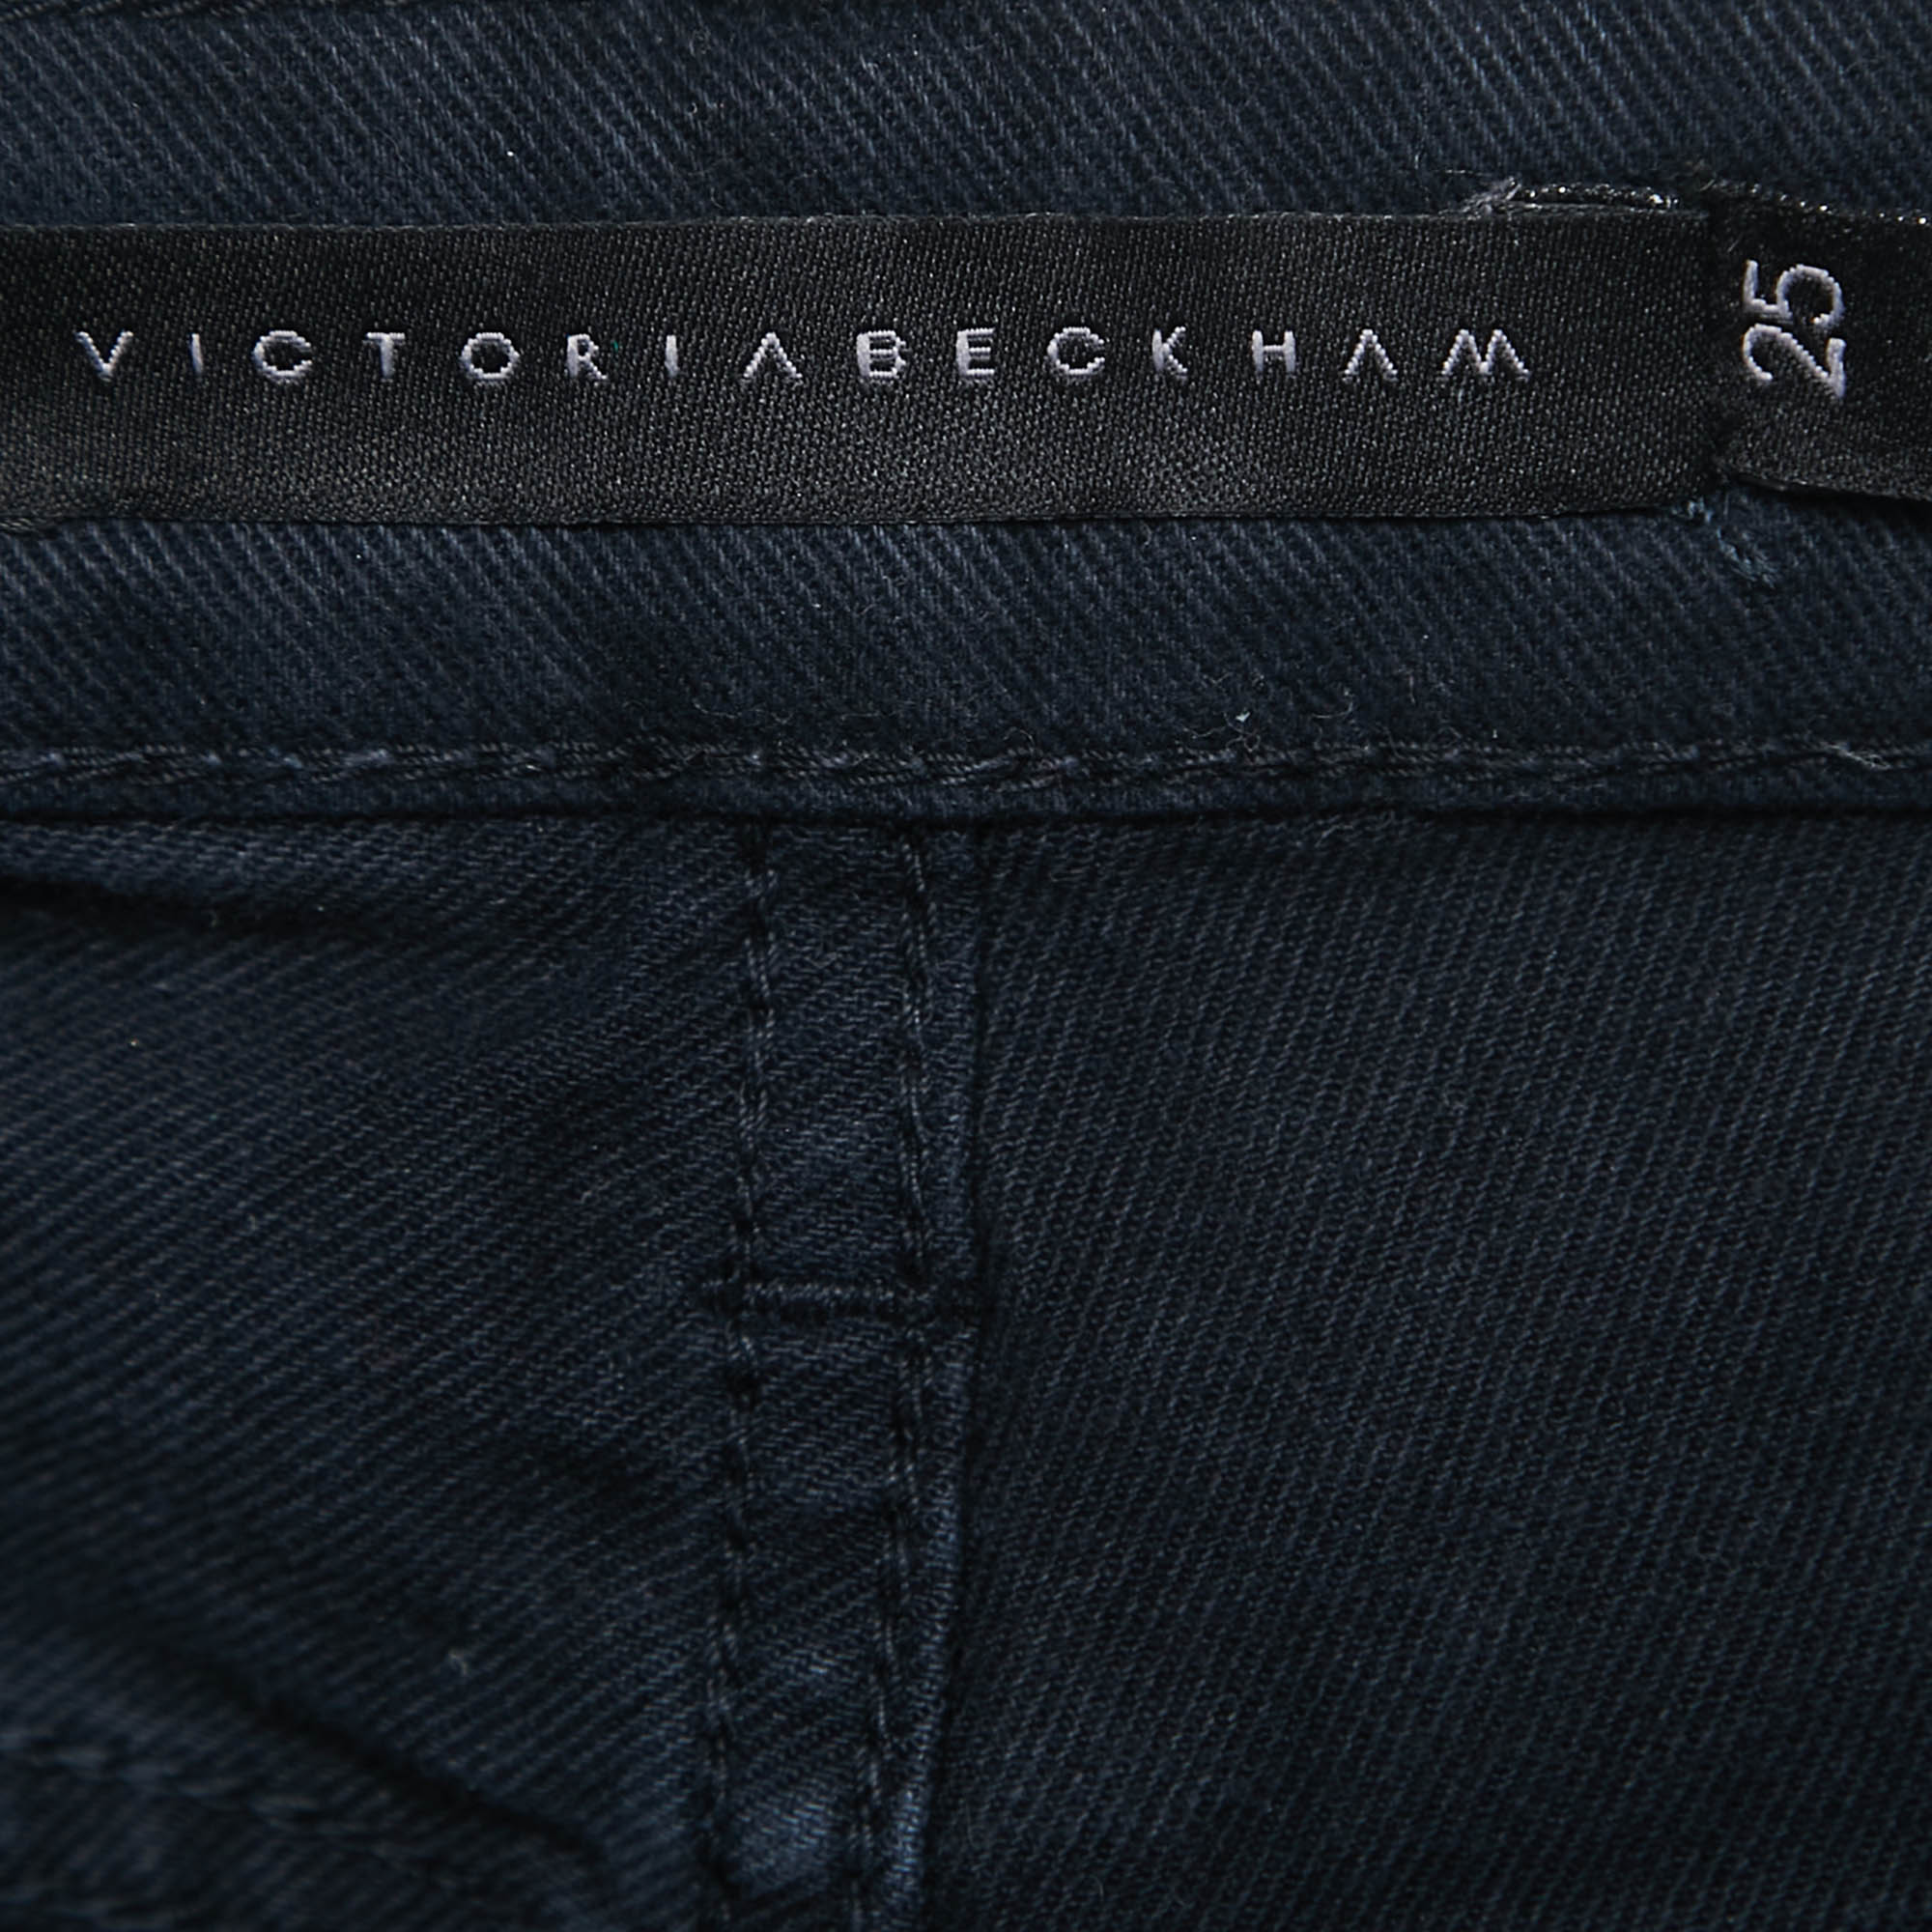 Victoria Beckham Navy Blue Denim Slim Fit Jeans S Waist 25